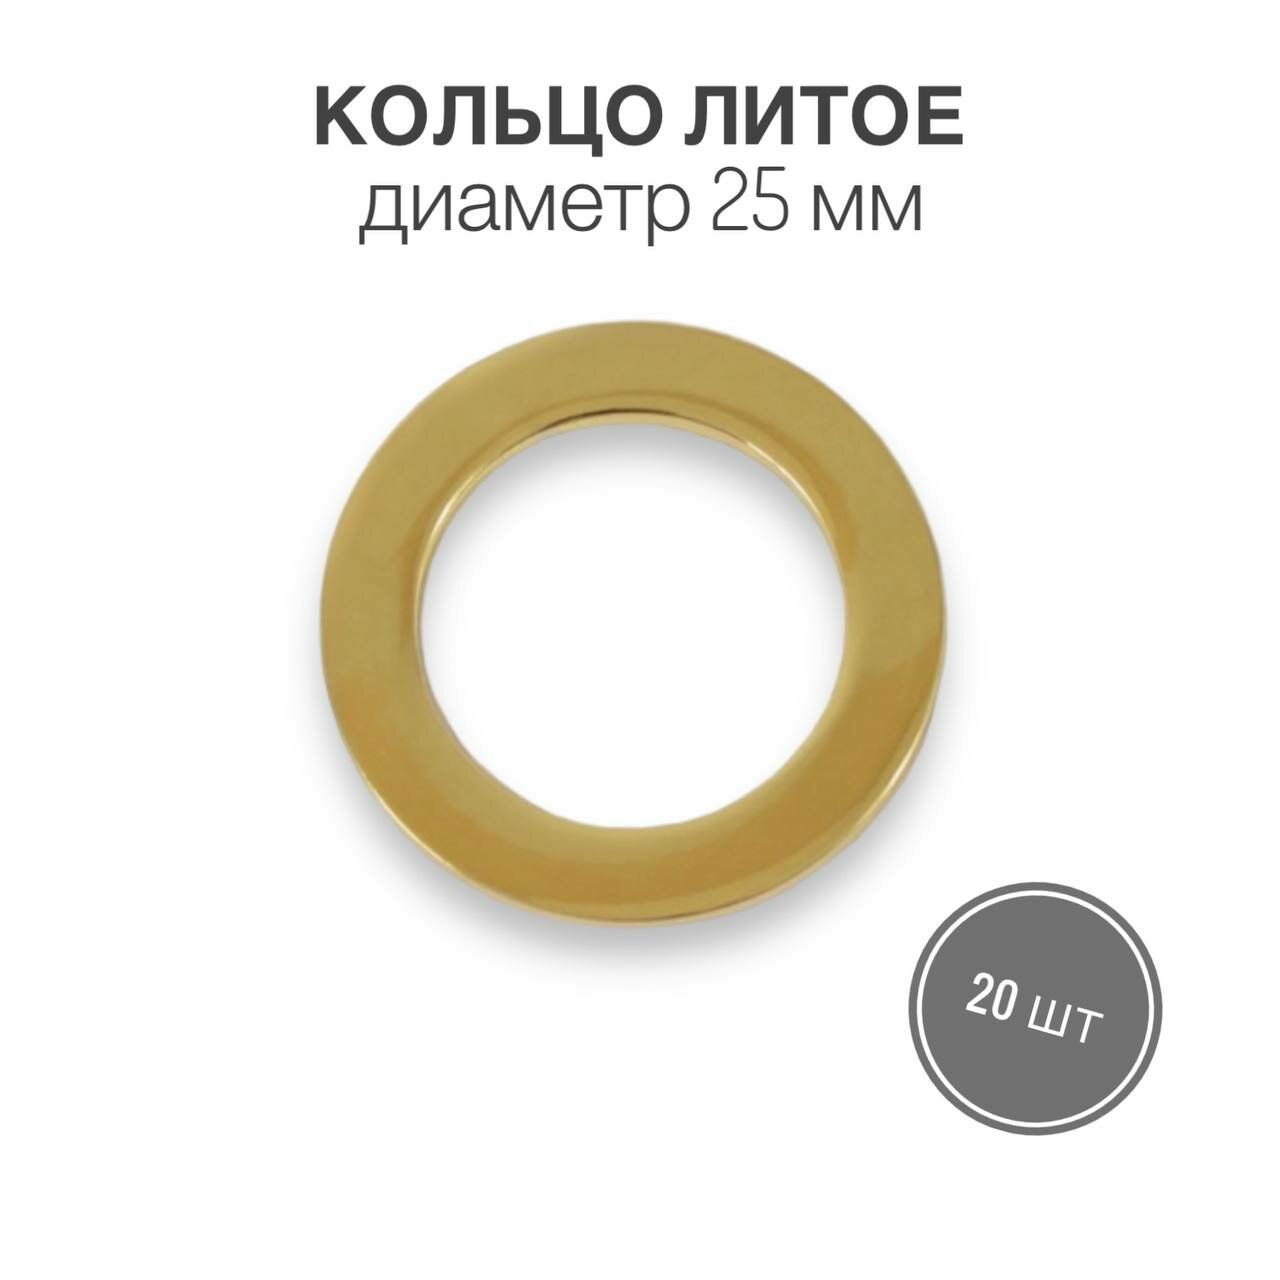 Кольцо литое, 25 мм, золото (брасс полированный), 20 шт